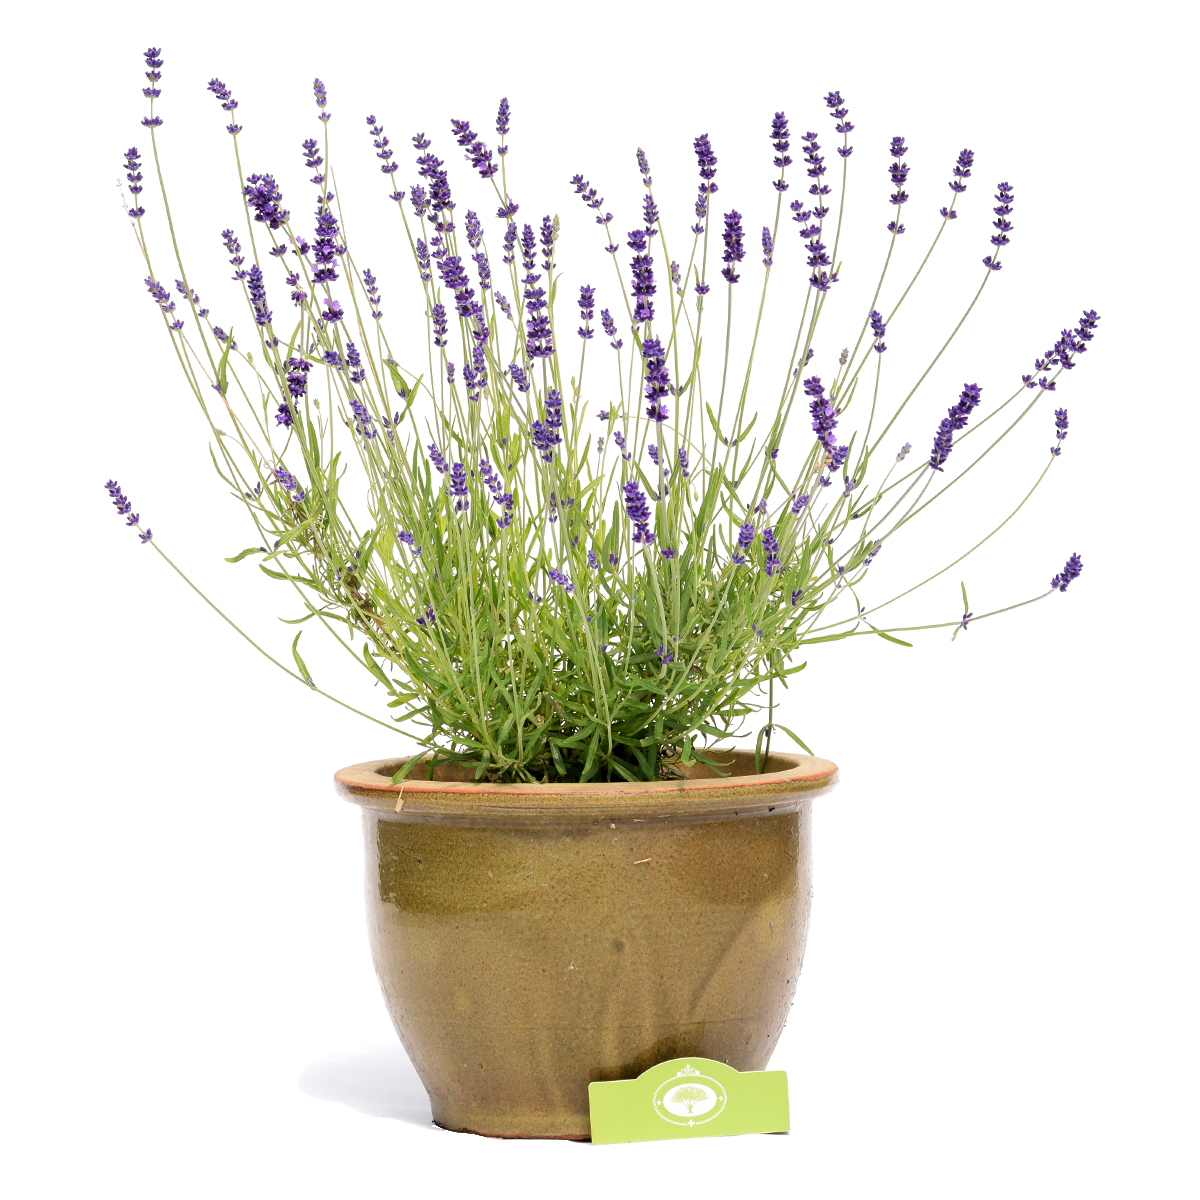 zweep oog Maryanne Jones Lavendel 'Hidcote', vaste plant in 2 liter pot | Schramas.com | Planten  direct van de kweker | Schrama Nurseries BV.